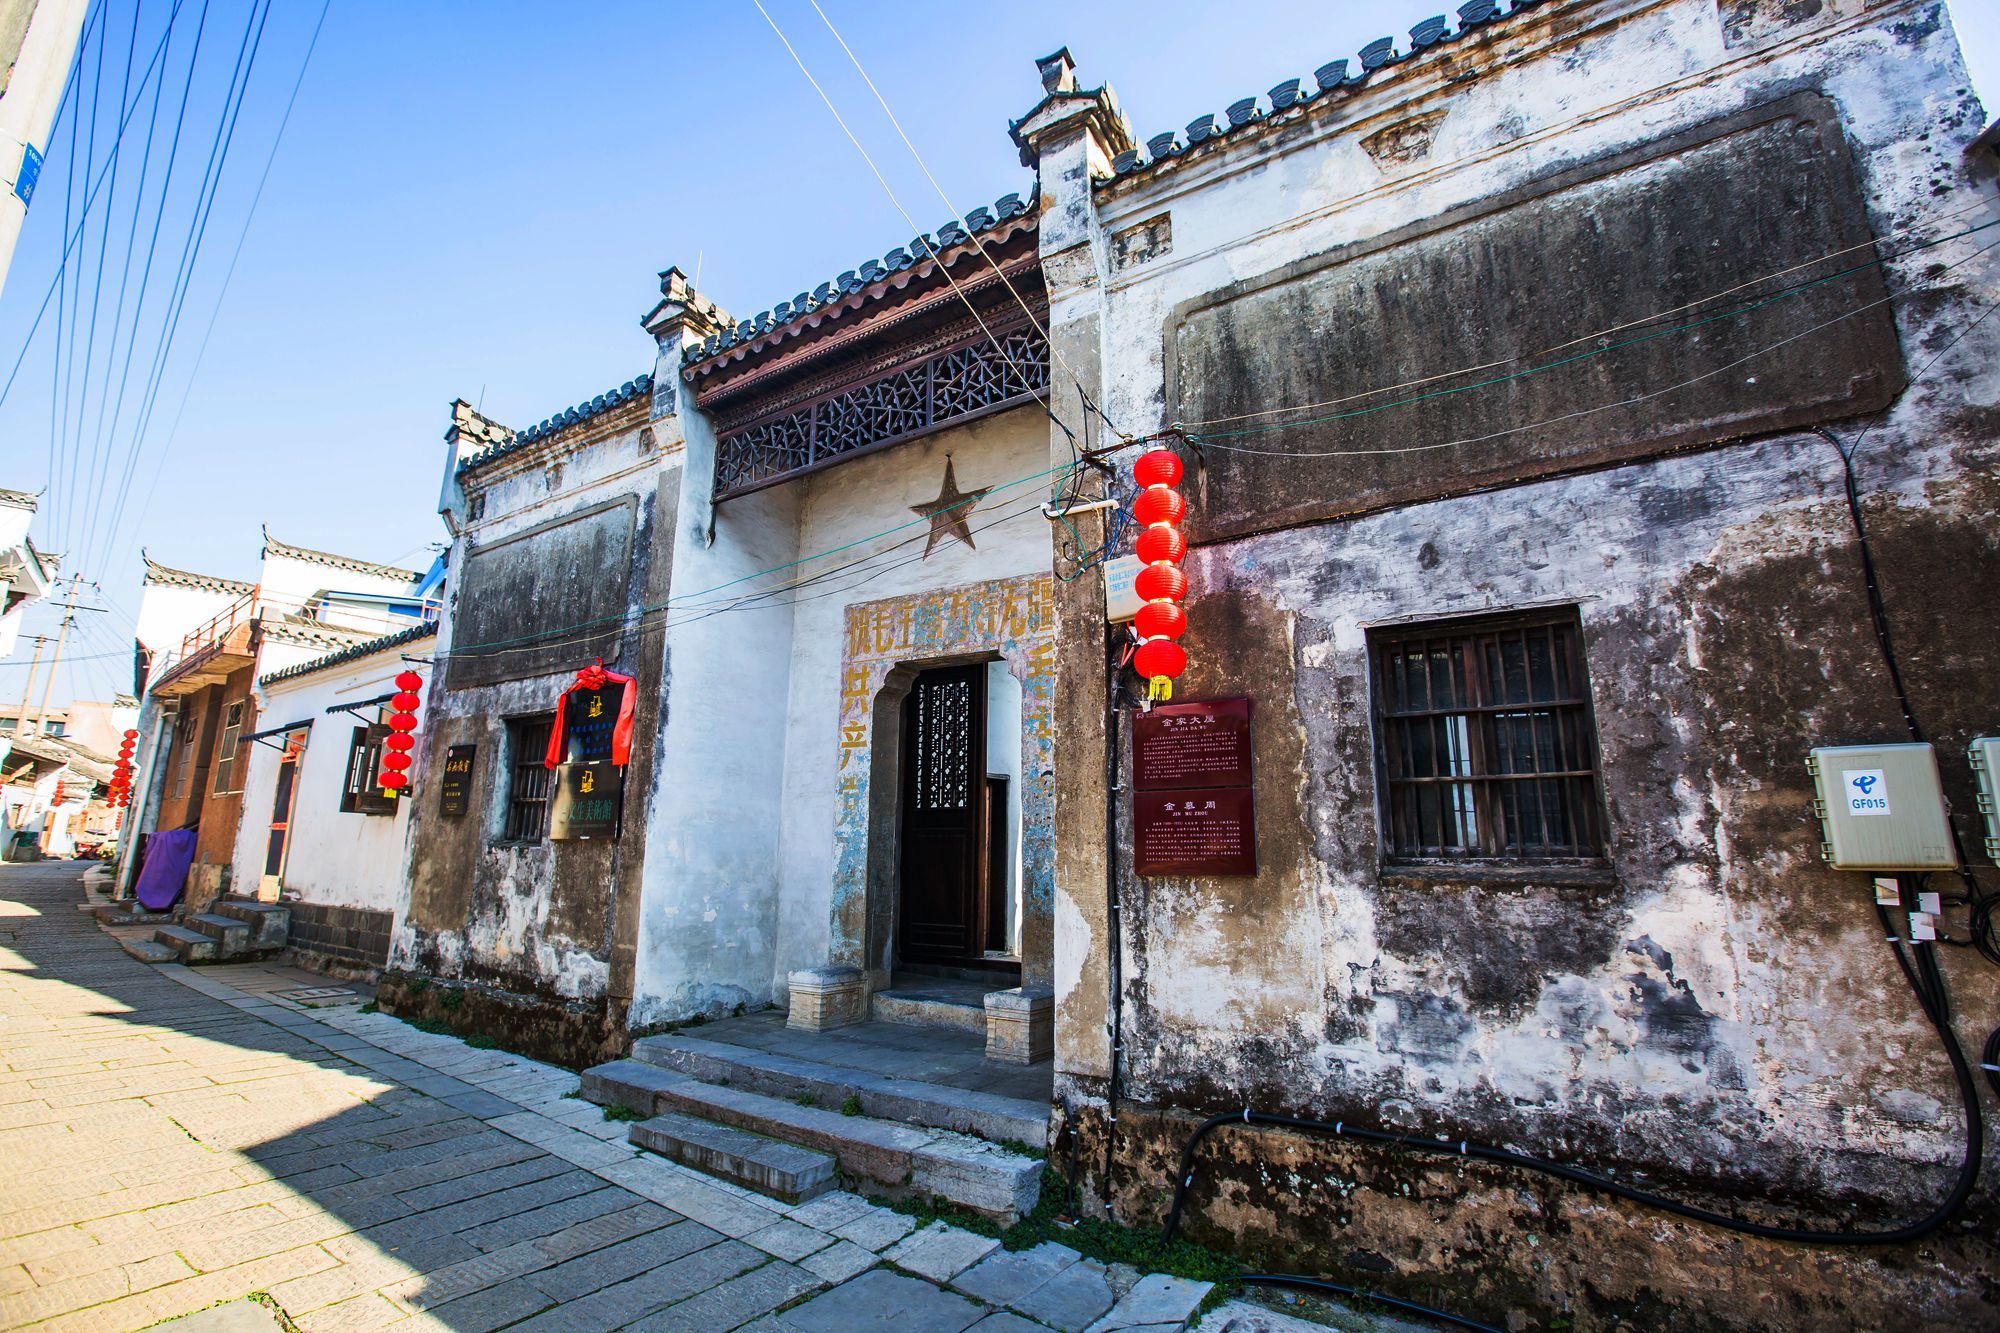 安徽池州有一座东流古镇,位于长江南岸,古色古香,极具徽派特色